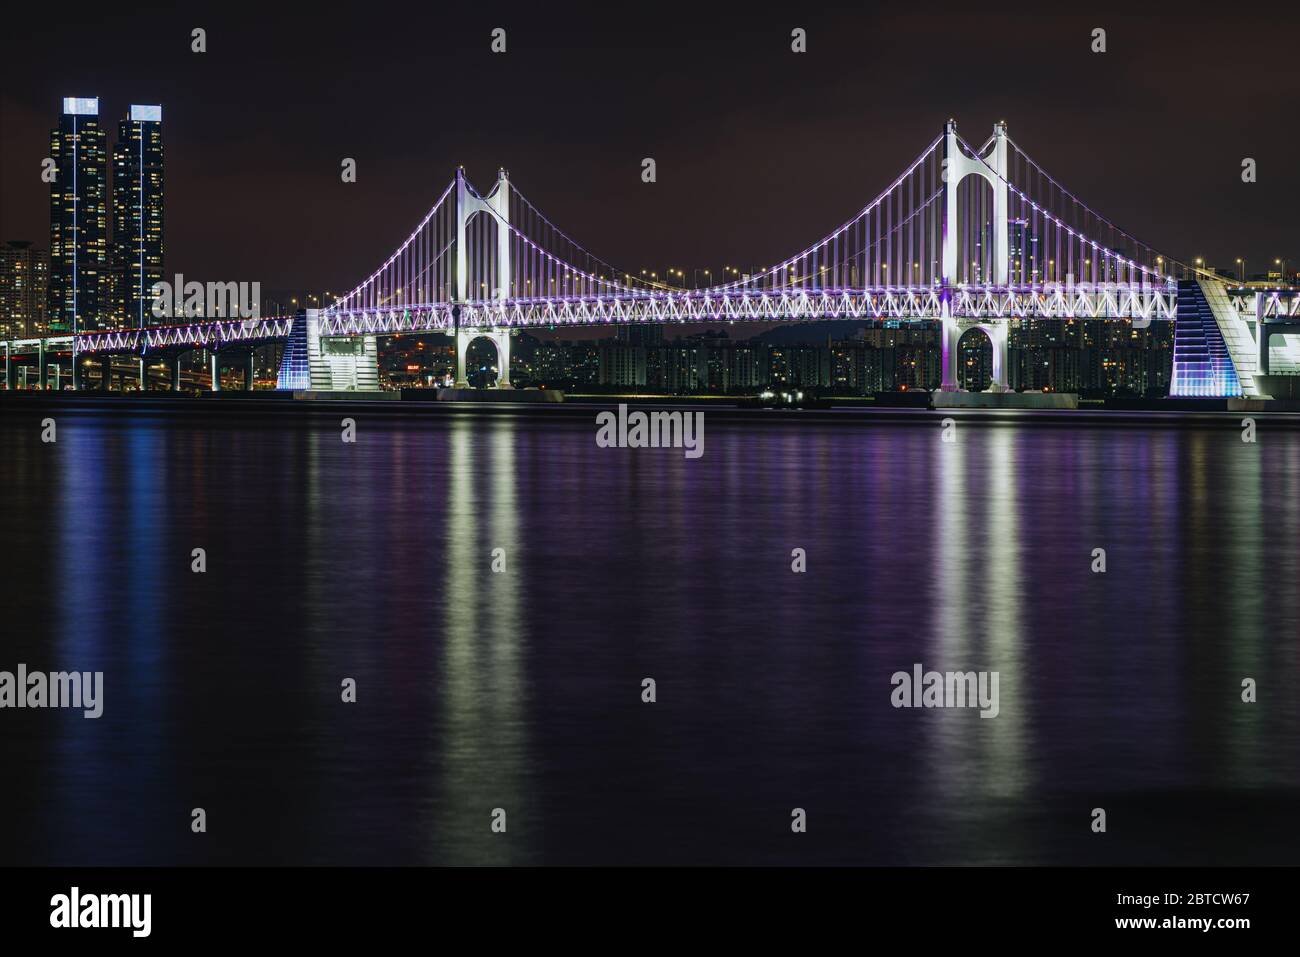 Busan, Corea del Sur - 21 de mayo de 2020: Con la ciudad corriendo hasta el océano y muchos puentes y rascacielos iluminados, Busan ofrece mucho Foto de stock